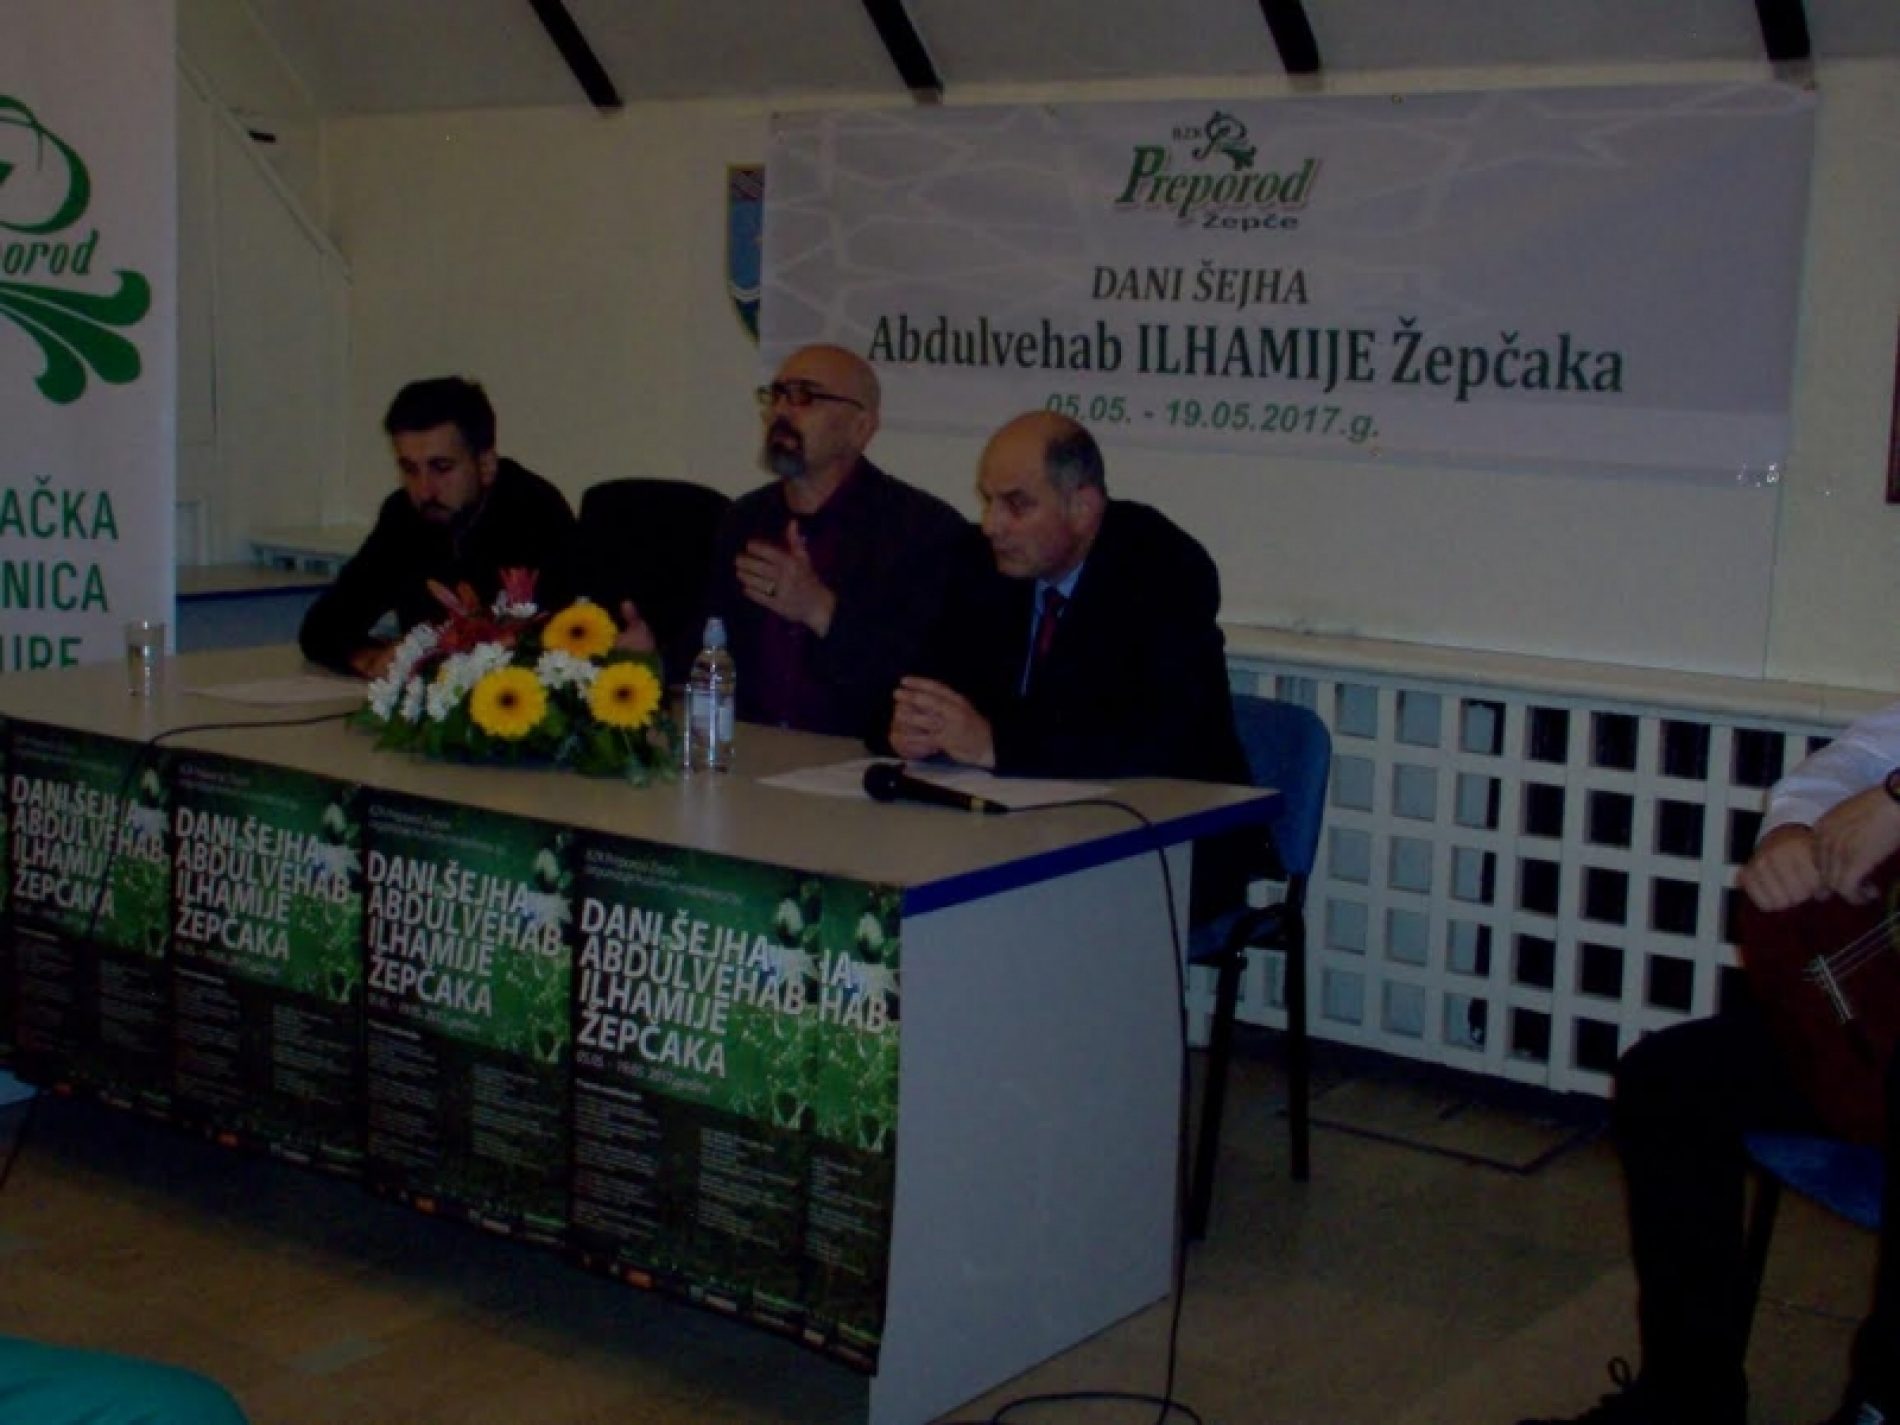 ‘Dani Abdulvehab Ilhamije Žepčaka’: Ilhamija, bošnjački učitelj slobode i dostojanstva